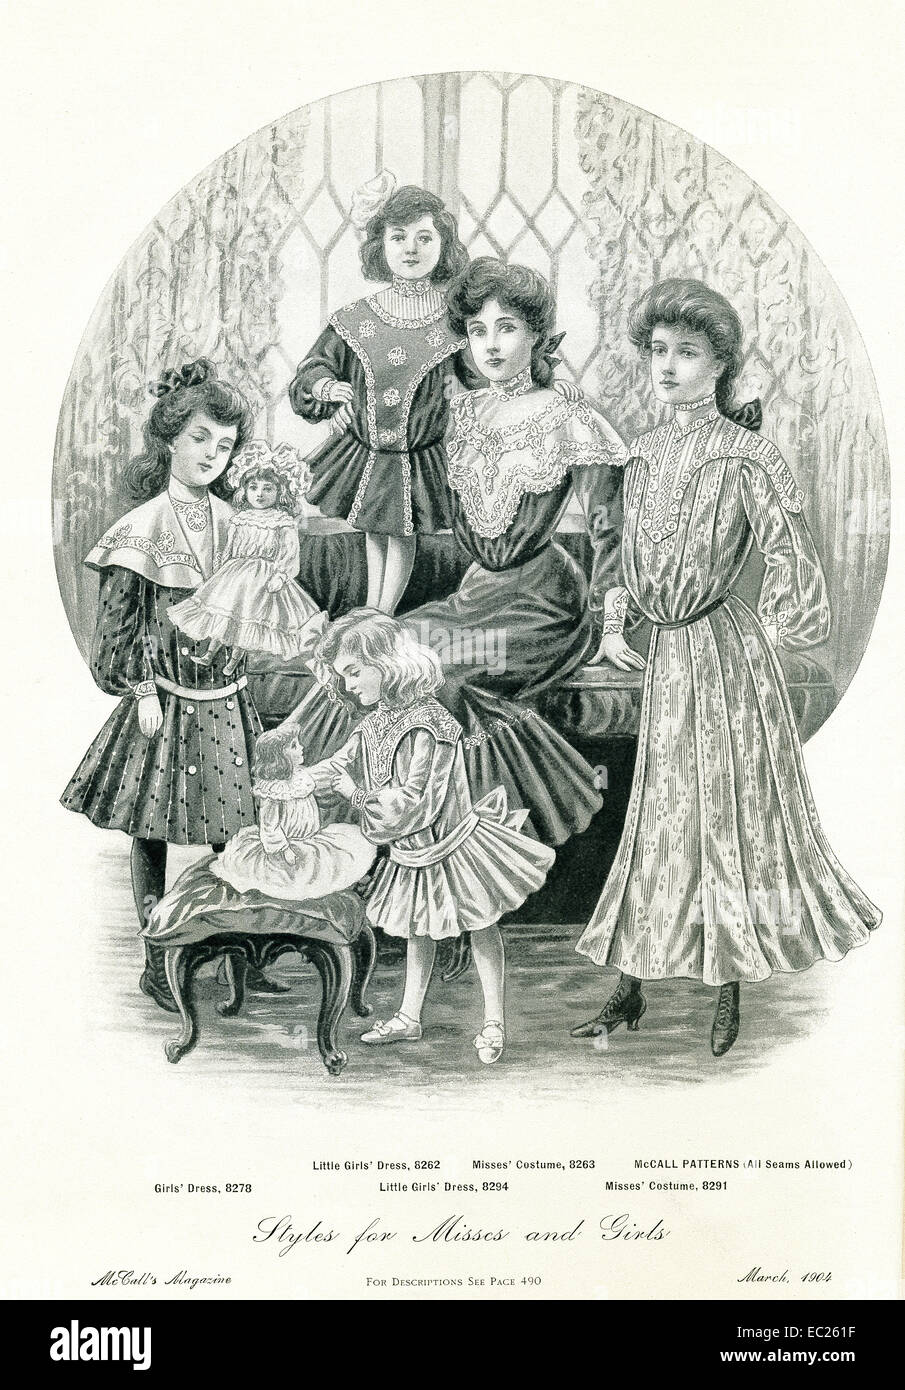 Diese Seite erschien im McCalls Magazin im März 1904. Es unterstreicht den Kleidungsstil für Damen und junge Mädchen zur Zeit und gibt die McCall Musternummer für jedes Kleid. Stockfoto